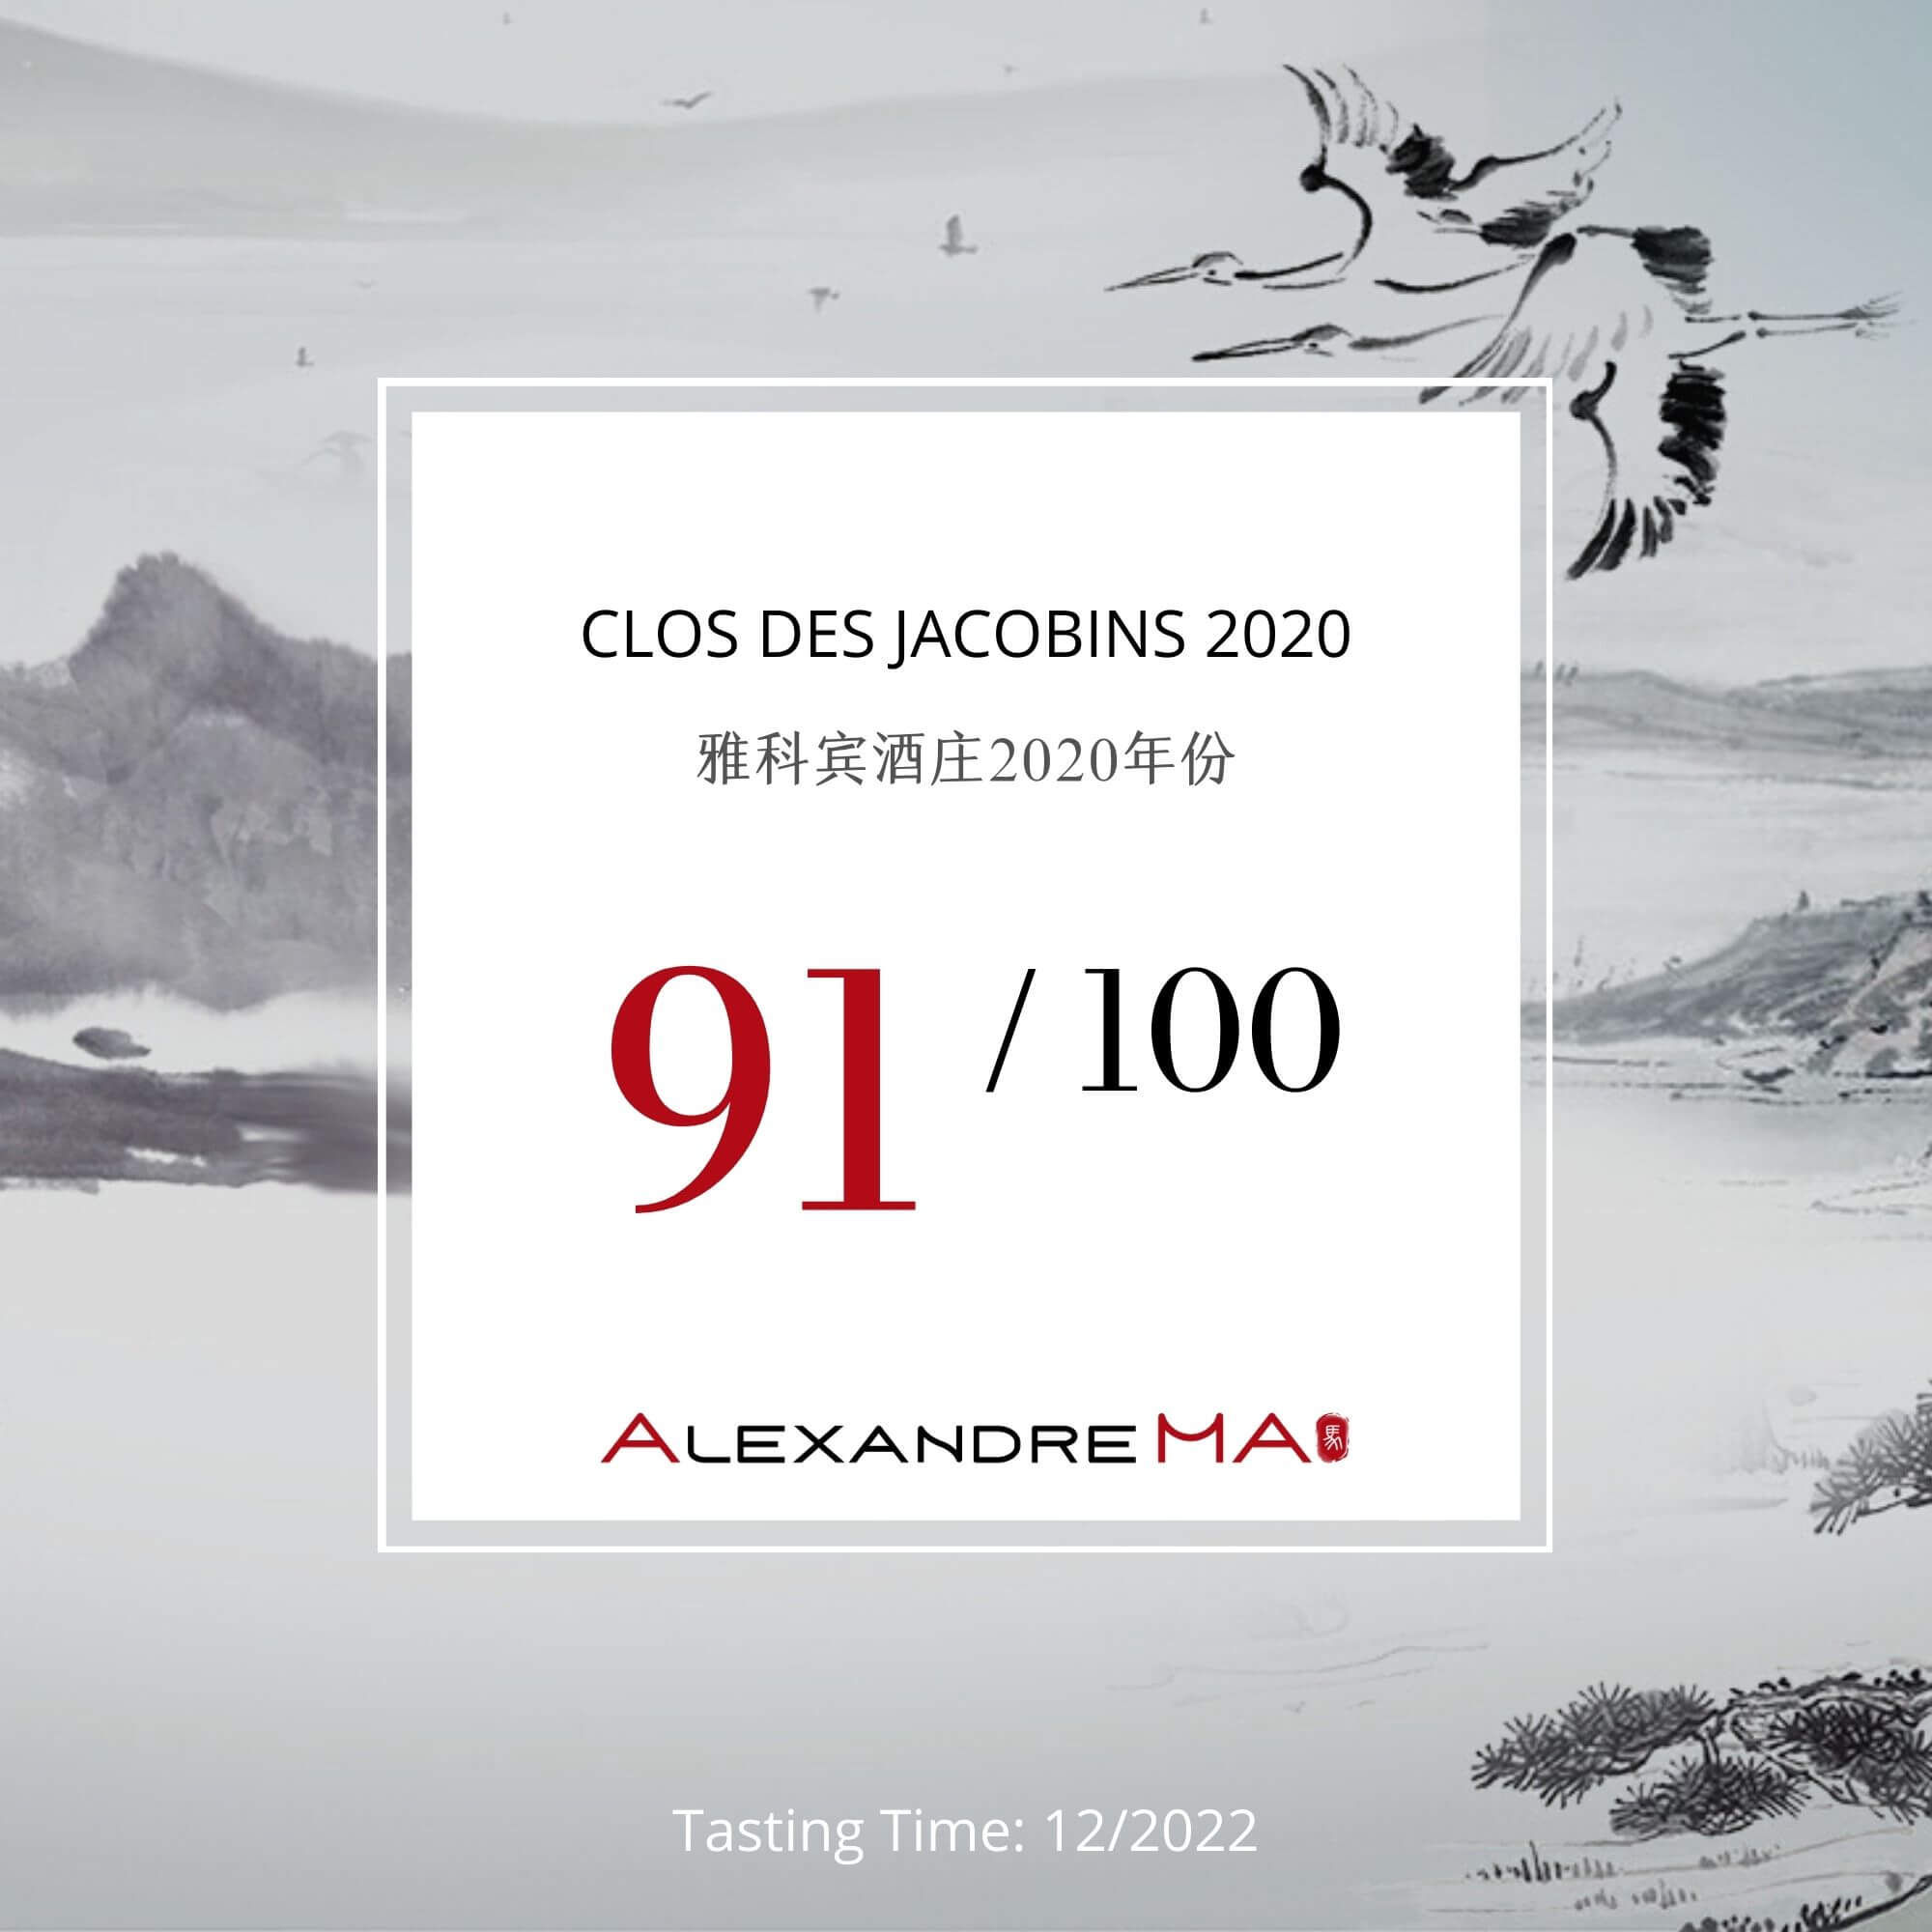 Clos des Jacobins 2020 雅科宾酒庄 - Alexandre Ma